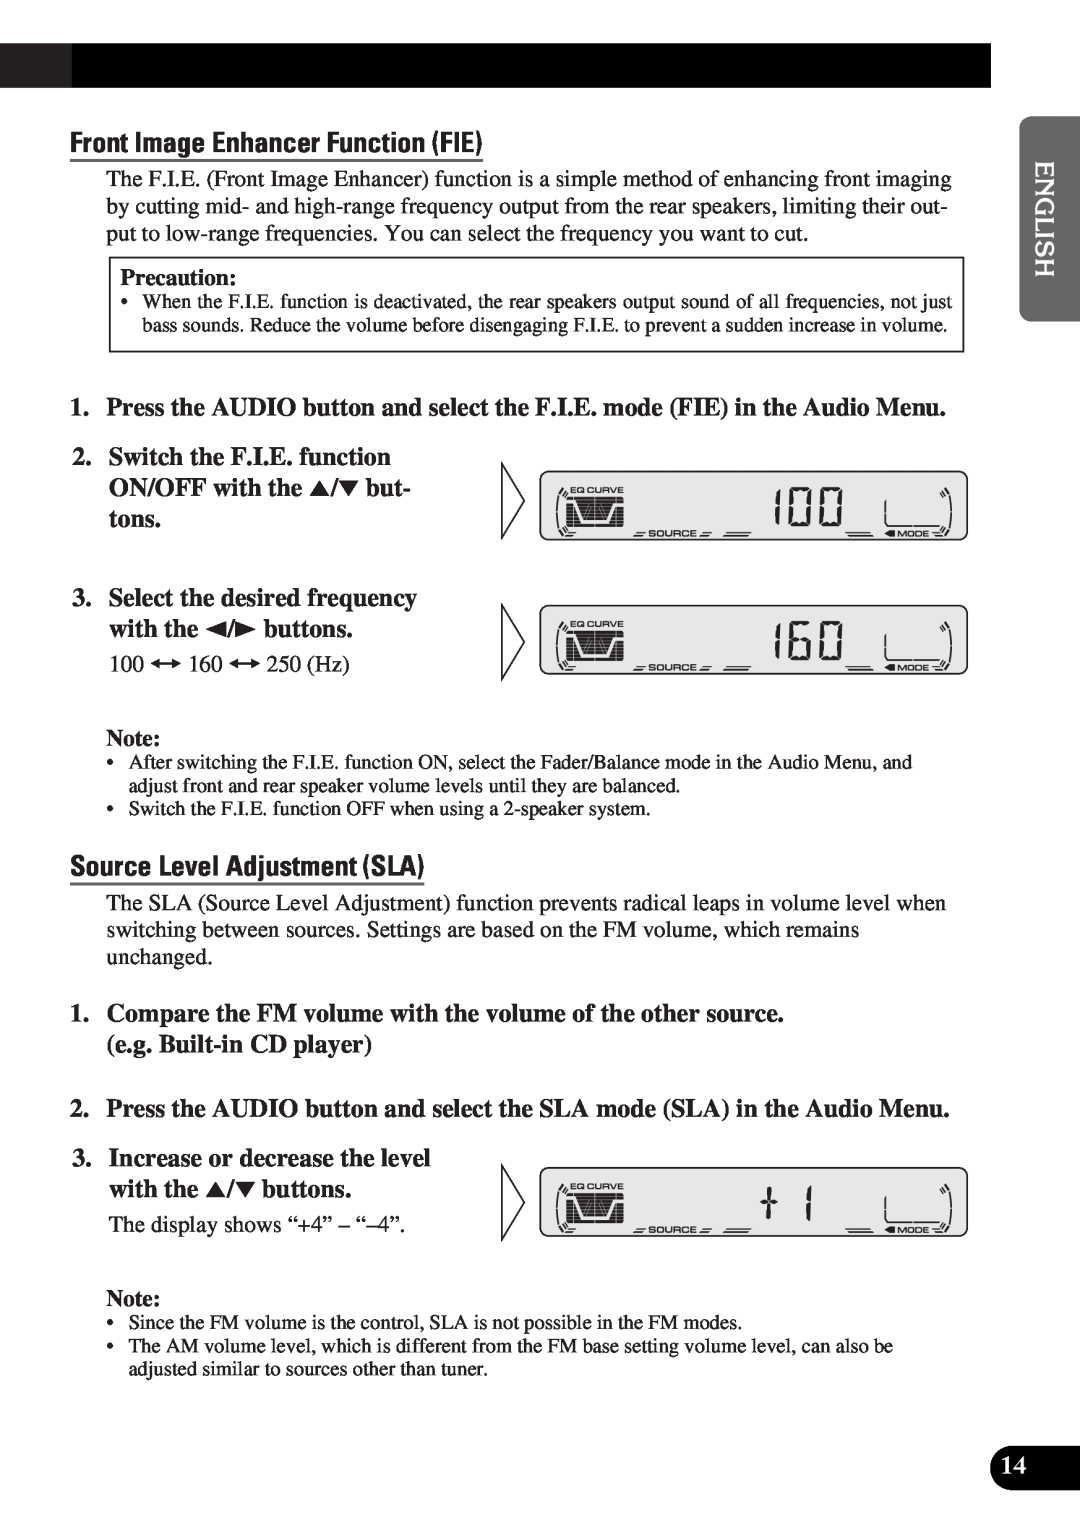 Pioneer DEH-12 operation manual Front Image Enhancer Function FIE, Source Level Adjustment SLA 